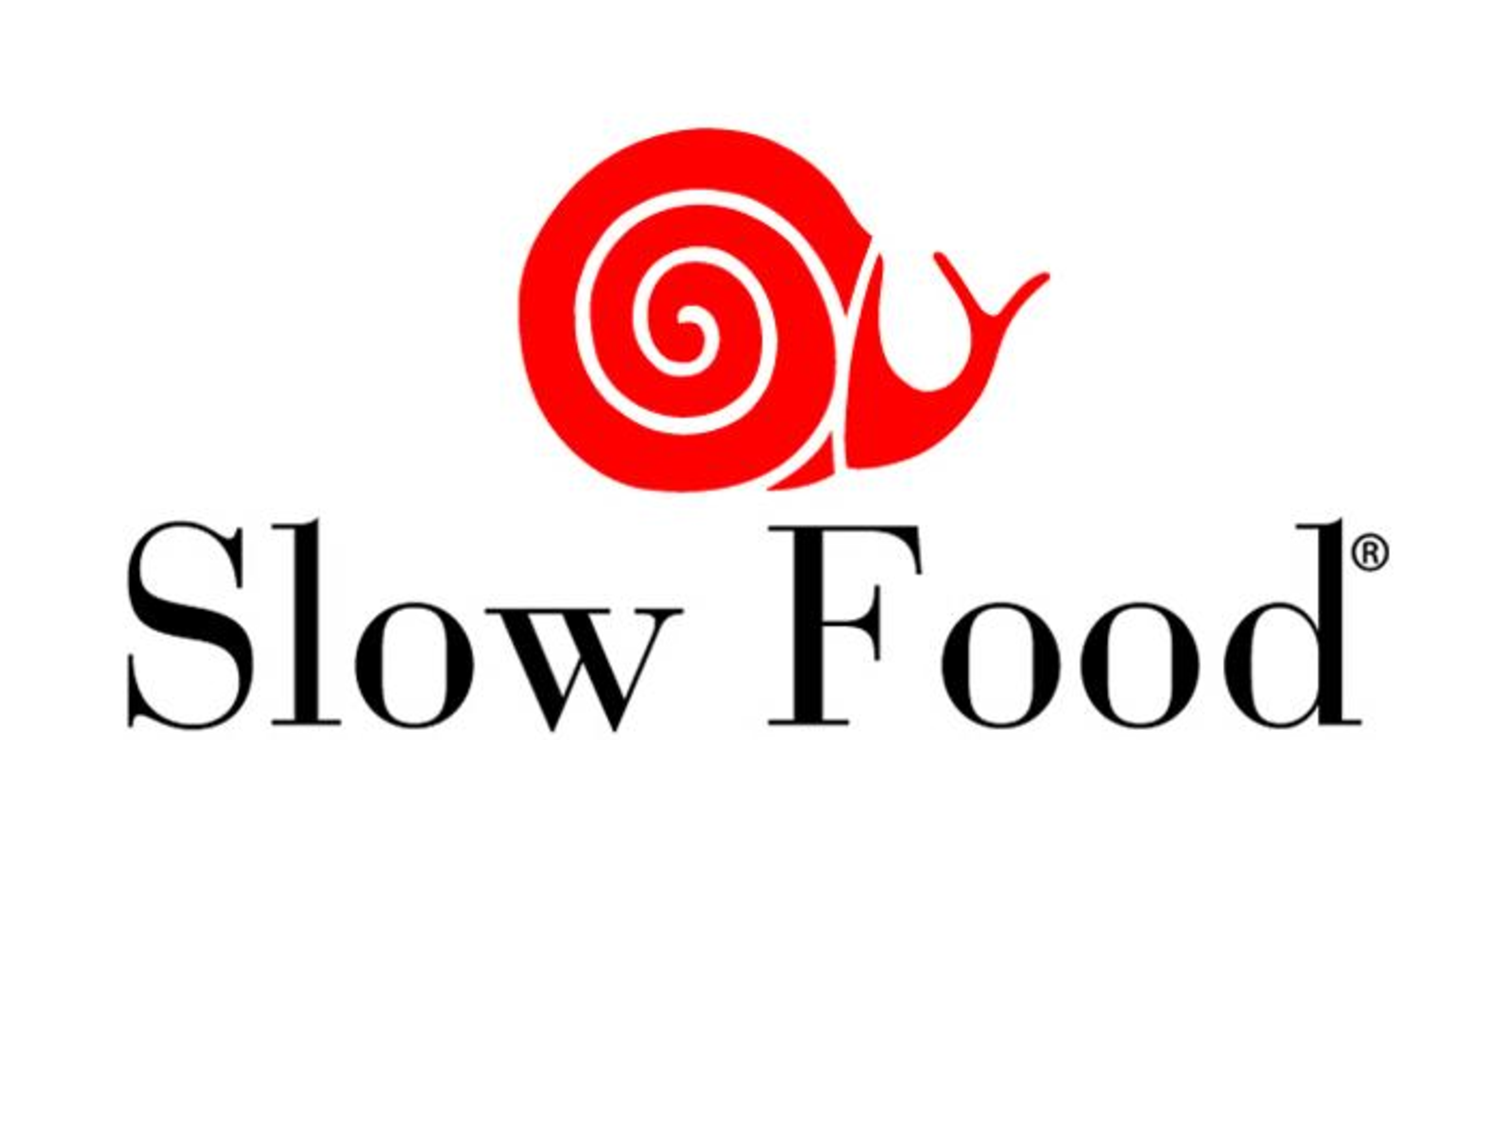 Fast Food Geleneğine Başkaldırı: Slow Food Hareketi - Case101